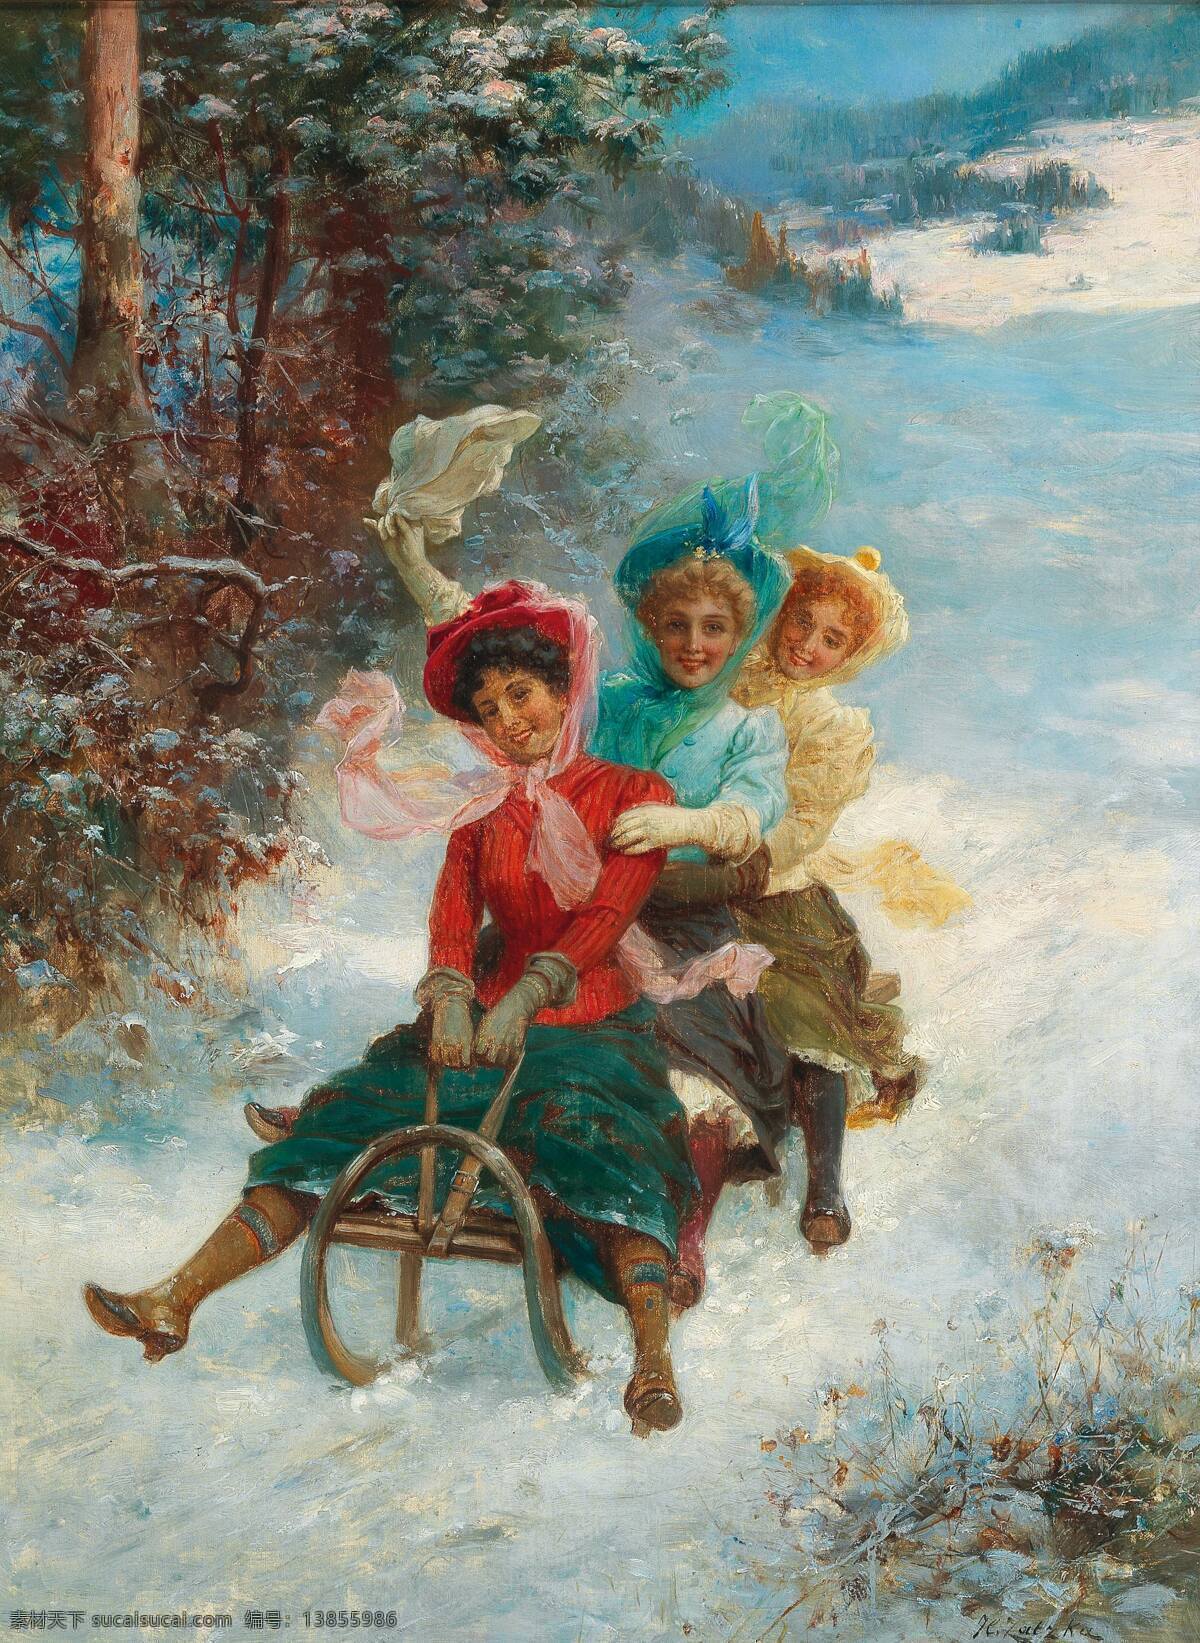 汉斯183 查兹卡作品 奥地利画家 滑雪 冬天 三个年轻姑娘 山坡 顺势而下 19世纪油画 油画 文化艺术 绘画书法